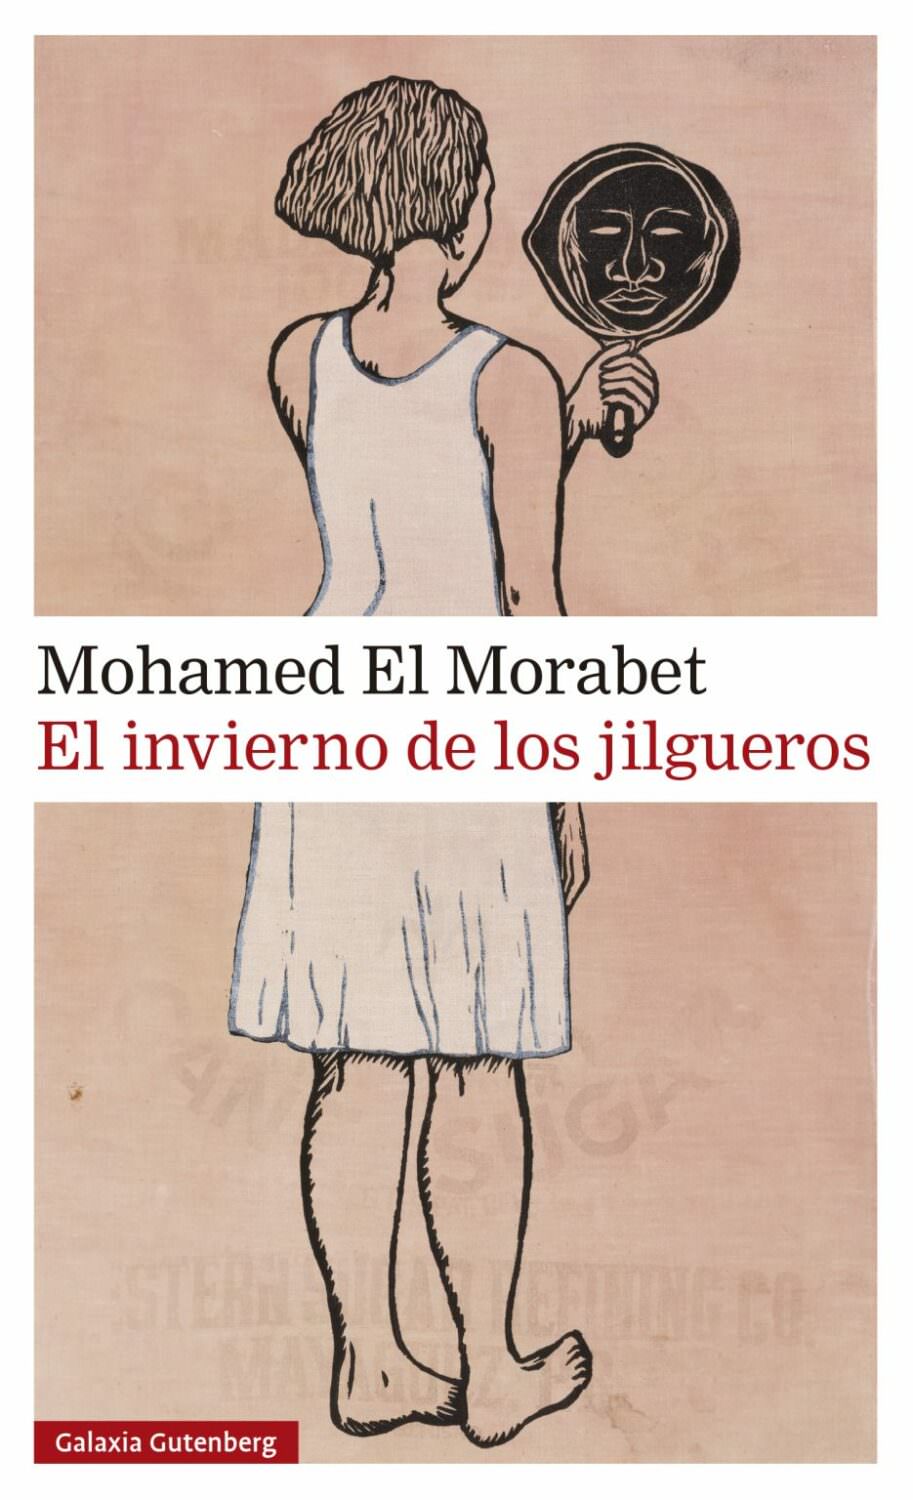 Mohamed El Morabet. El invierno de los jilgueros.